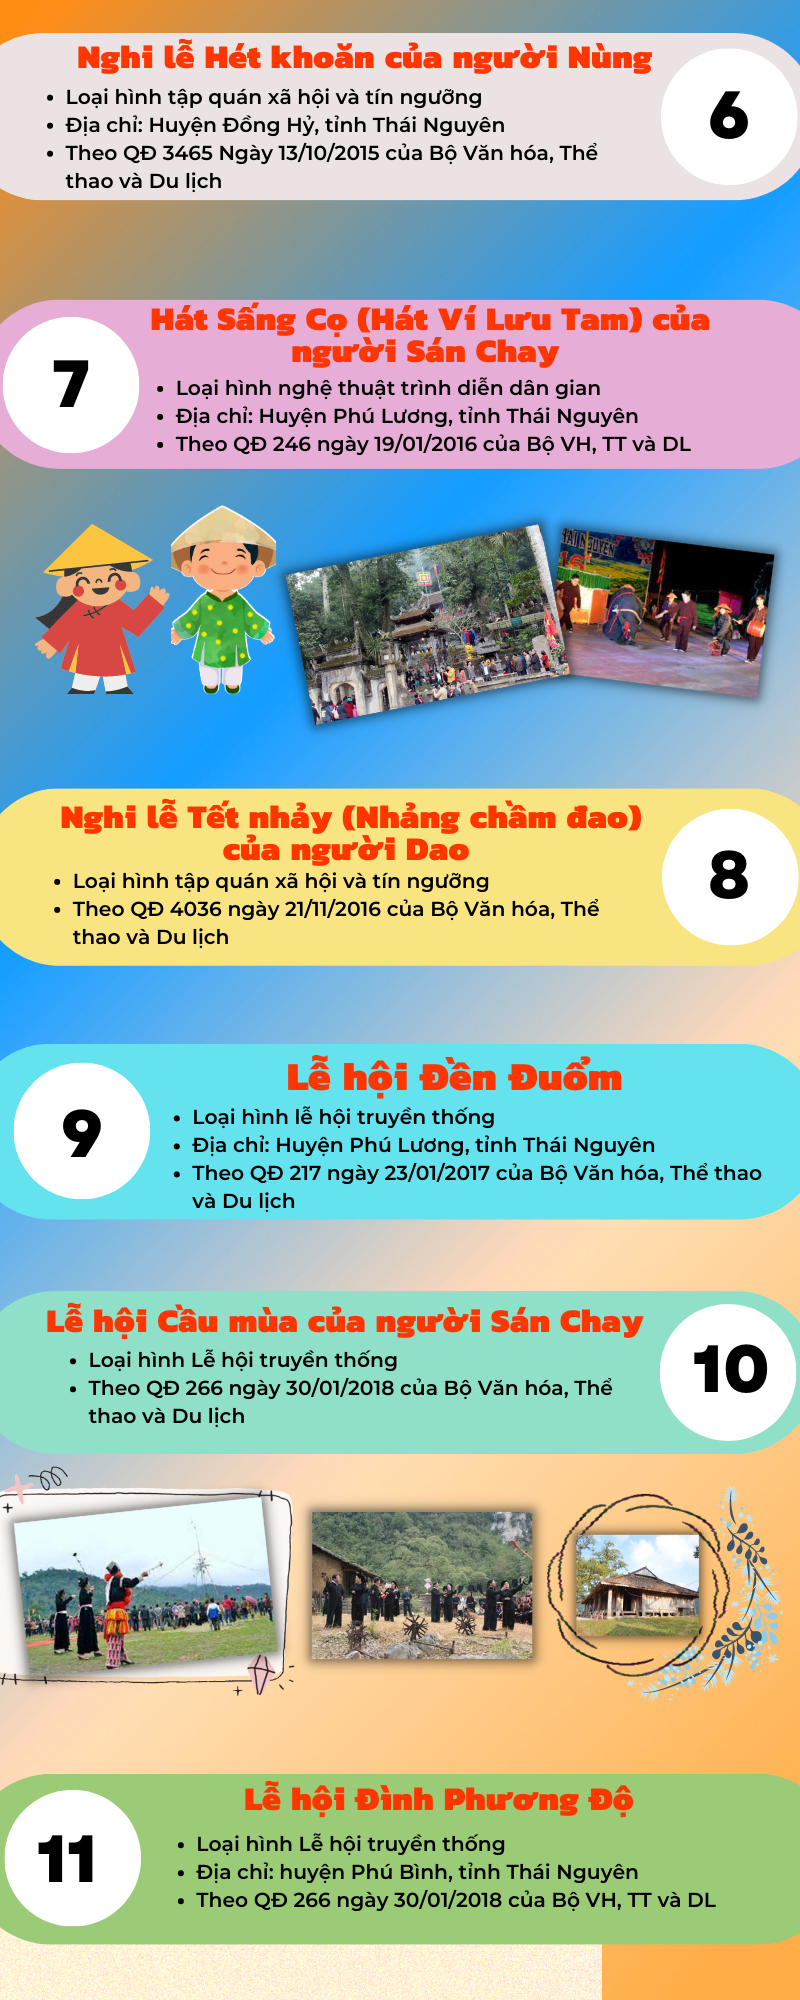 [Infographic]Danh sách di sản văn hóa phi vật thể cấp quốc gia của tỉnh Thái Nguyên